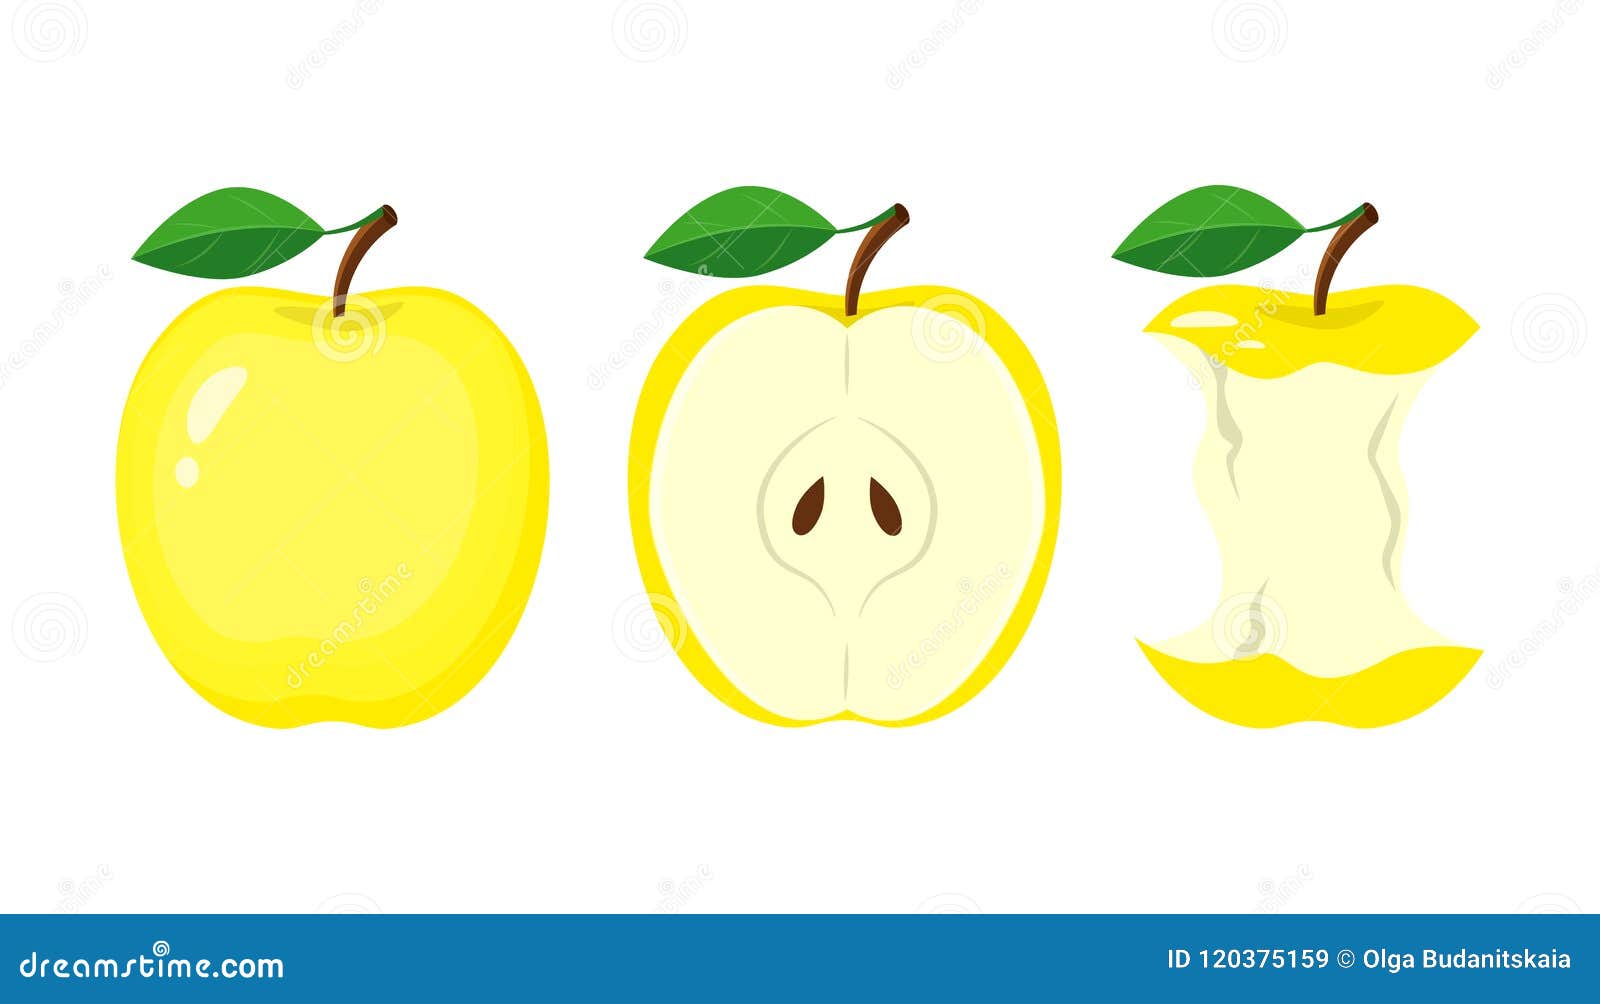 Яблоко желтое вектор